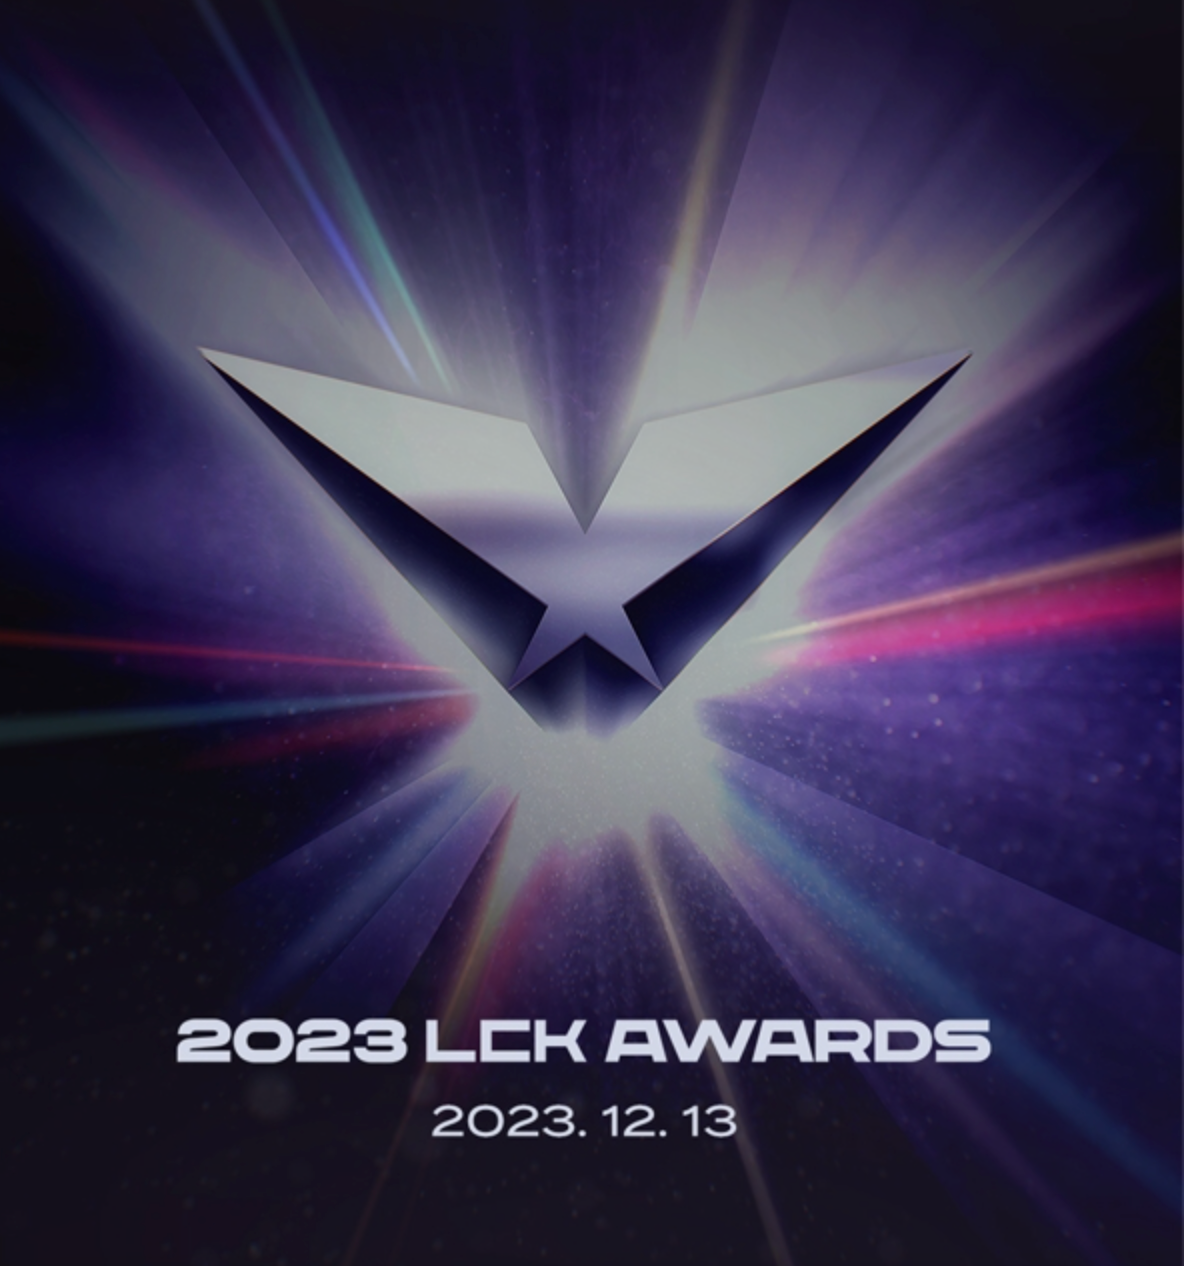 明星颁奖典礼“2023 LCK Awards”13日